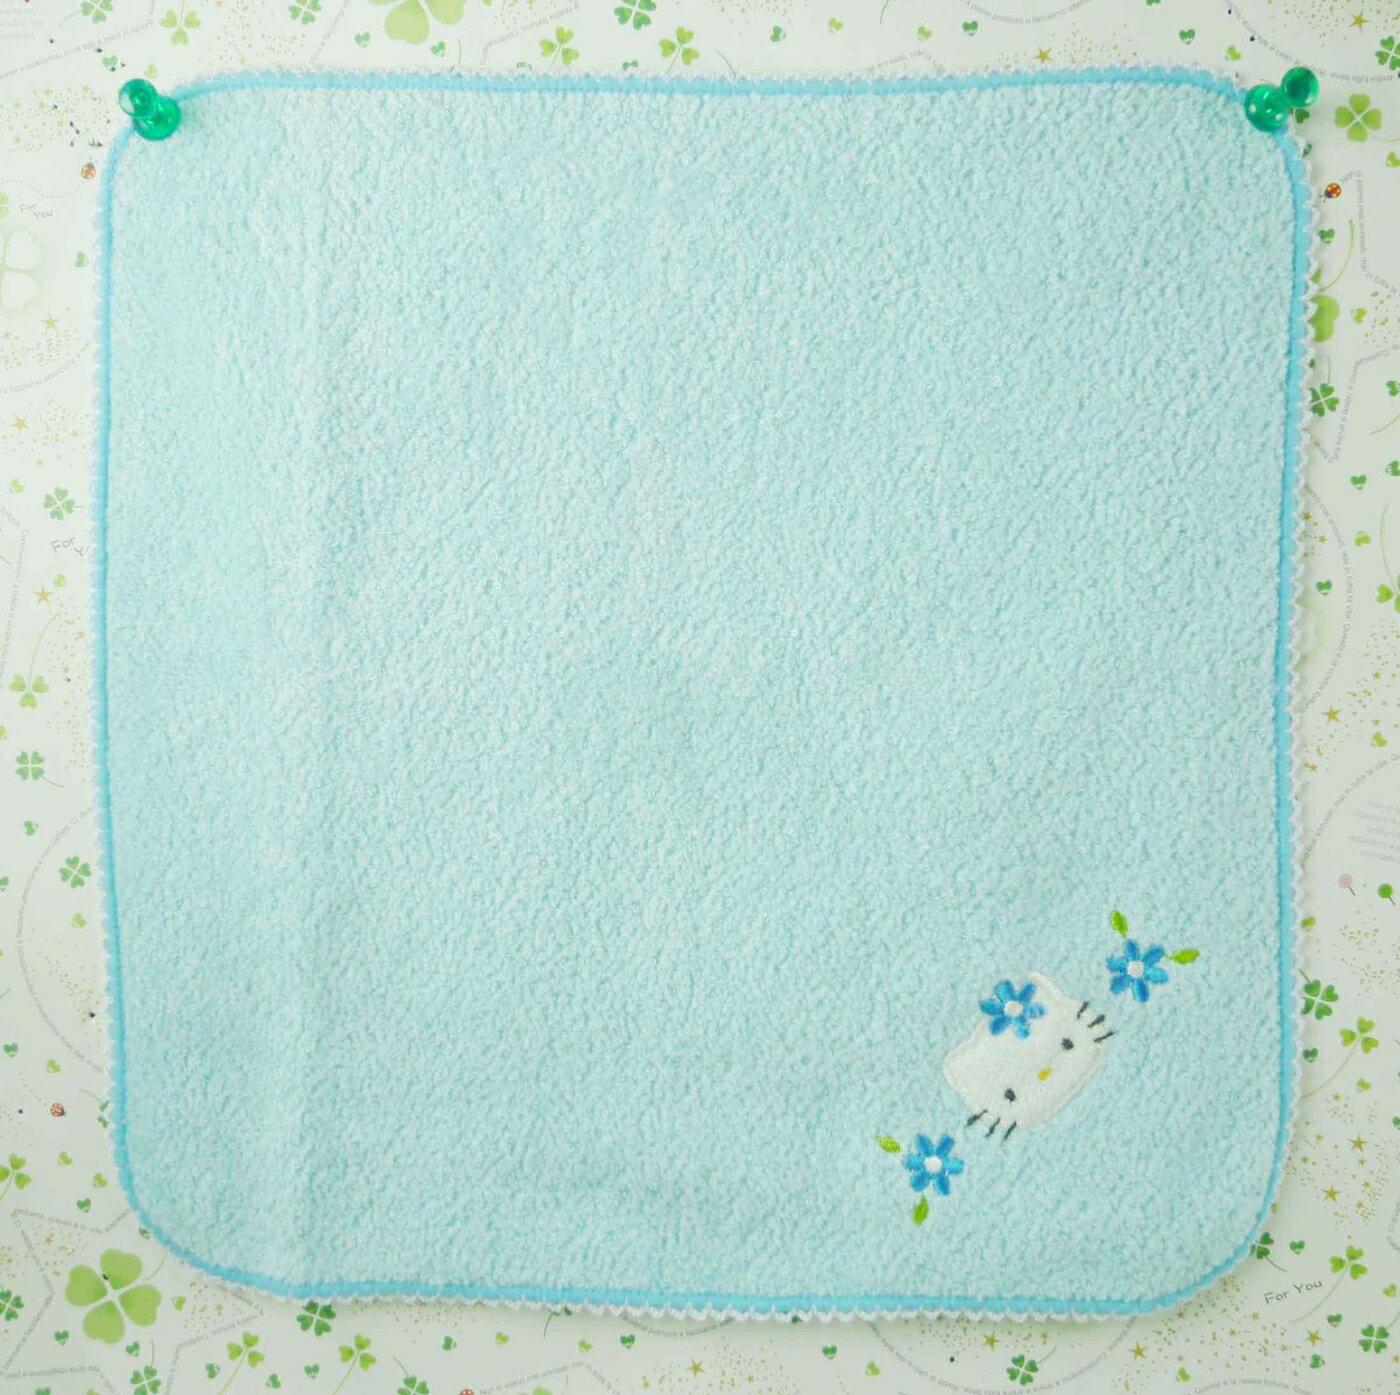 【震撼精品百貨】Hello Kitty 凱蒂貓 方巾/毛巾-藍色花朵 震撼日式精品百貨